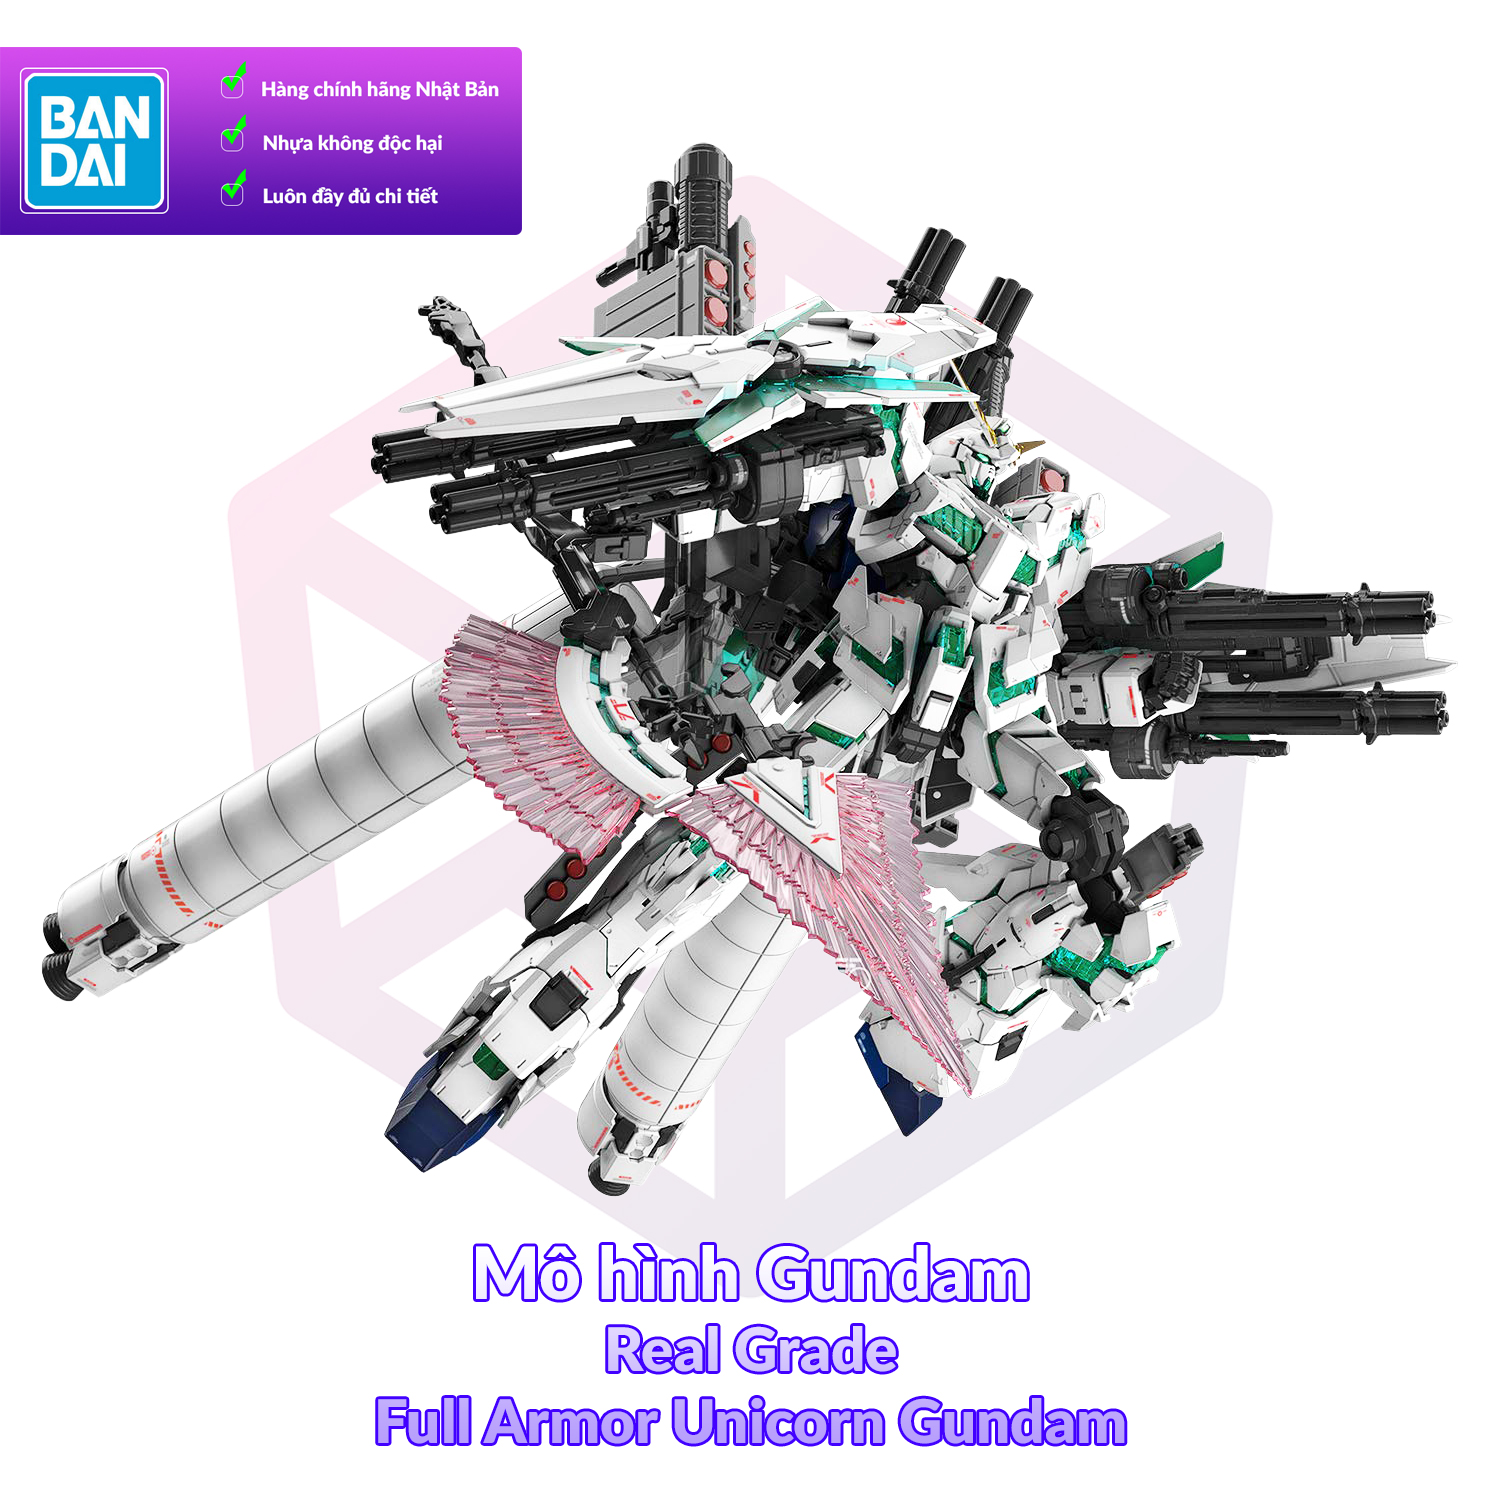 7-11 12 VOUCHER 8%Mô Hình Gundam Bandai RG 30 Full Armor Unicorn Gundam 1